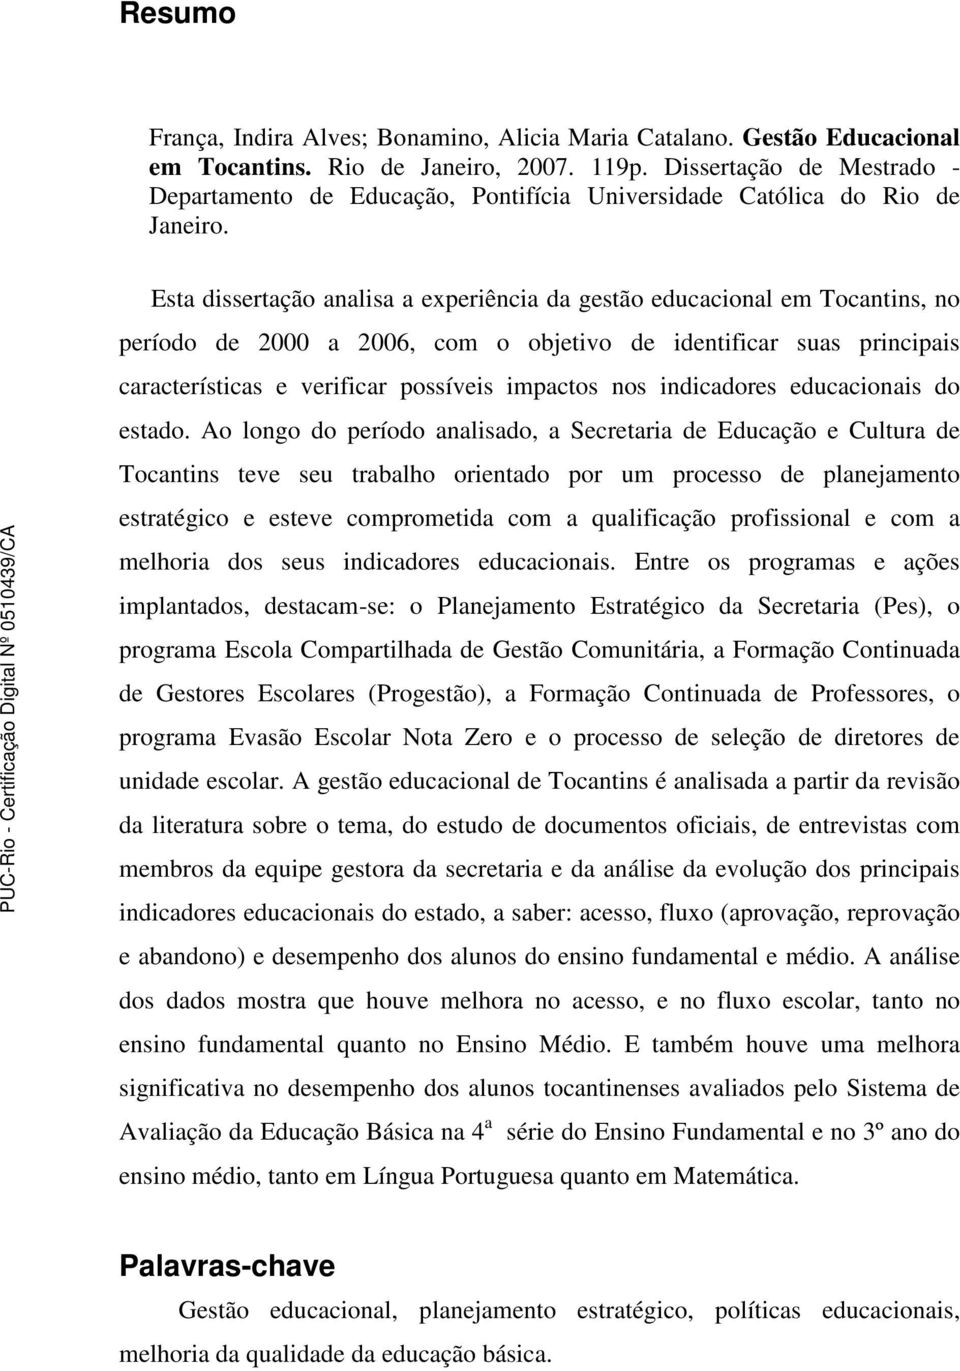 Esta dissertação analisa a experiência da gestão educacional em Tocantins, no período de 2000 a 2006, com o objetivo de identificar suas principais características e verificar possíveis impactos nos